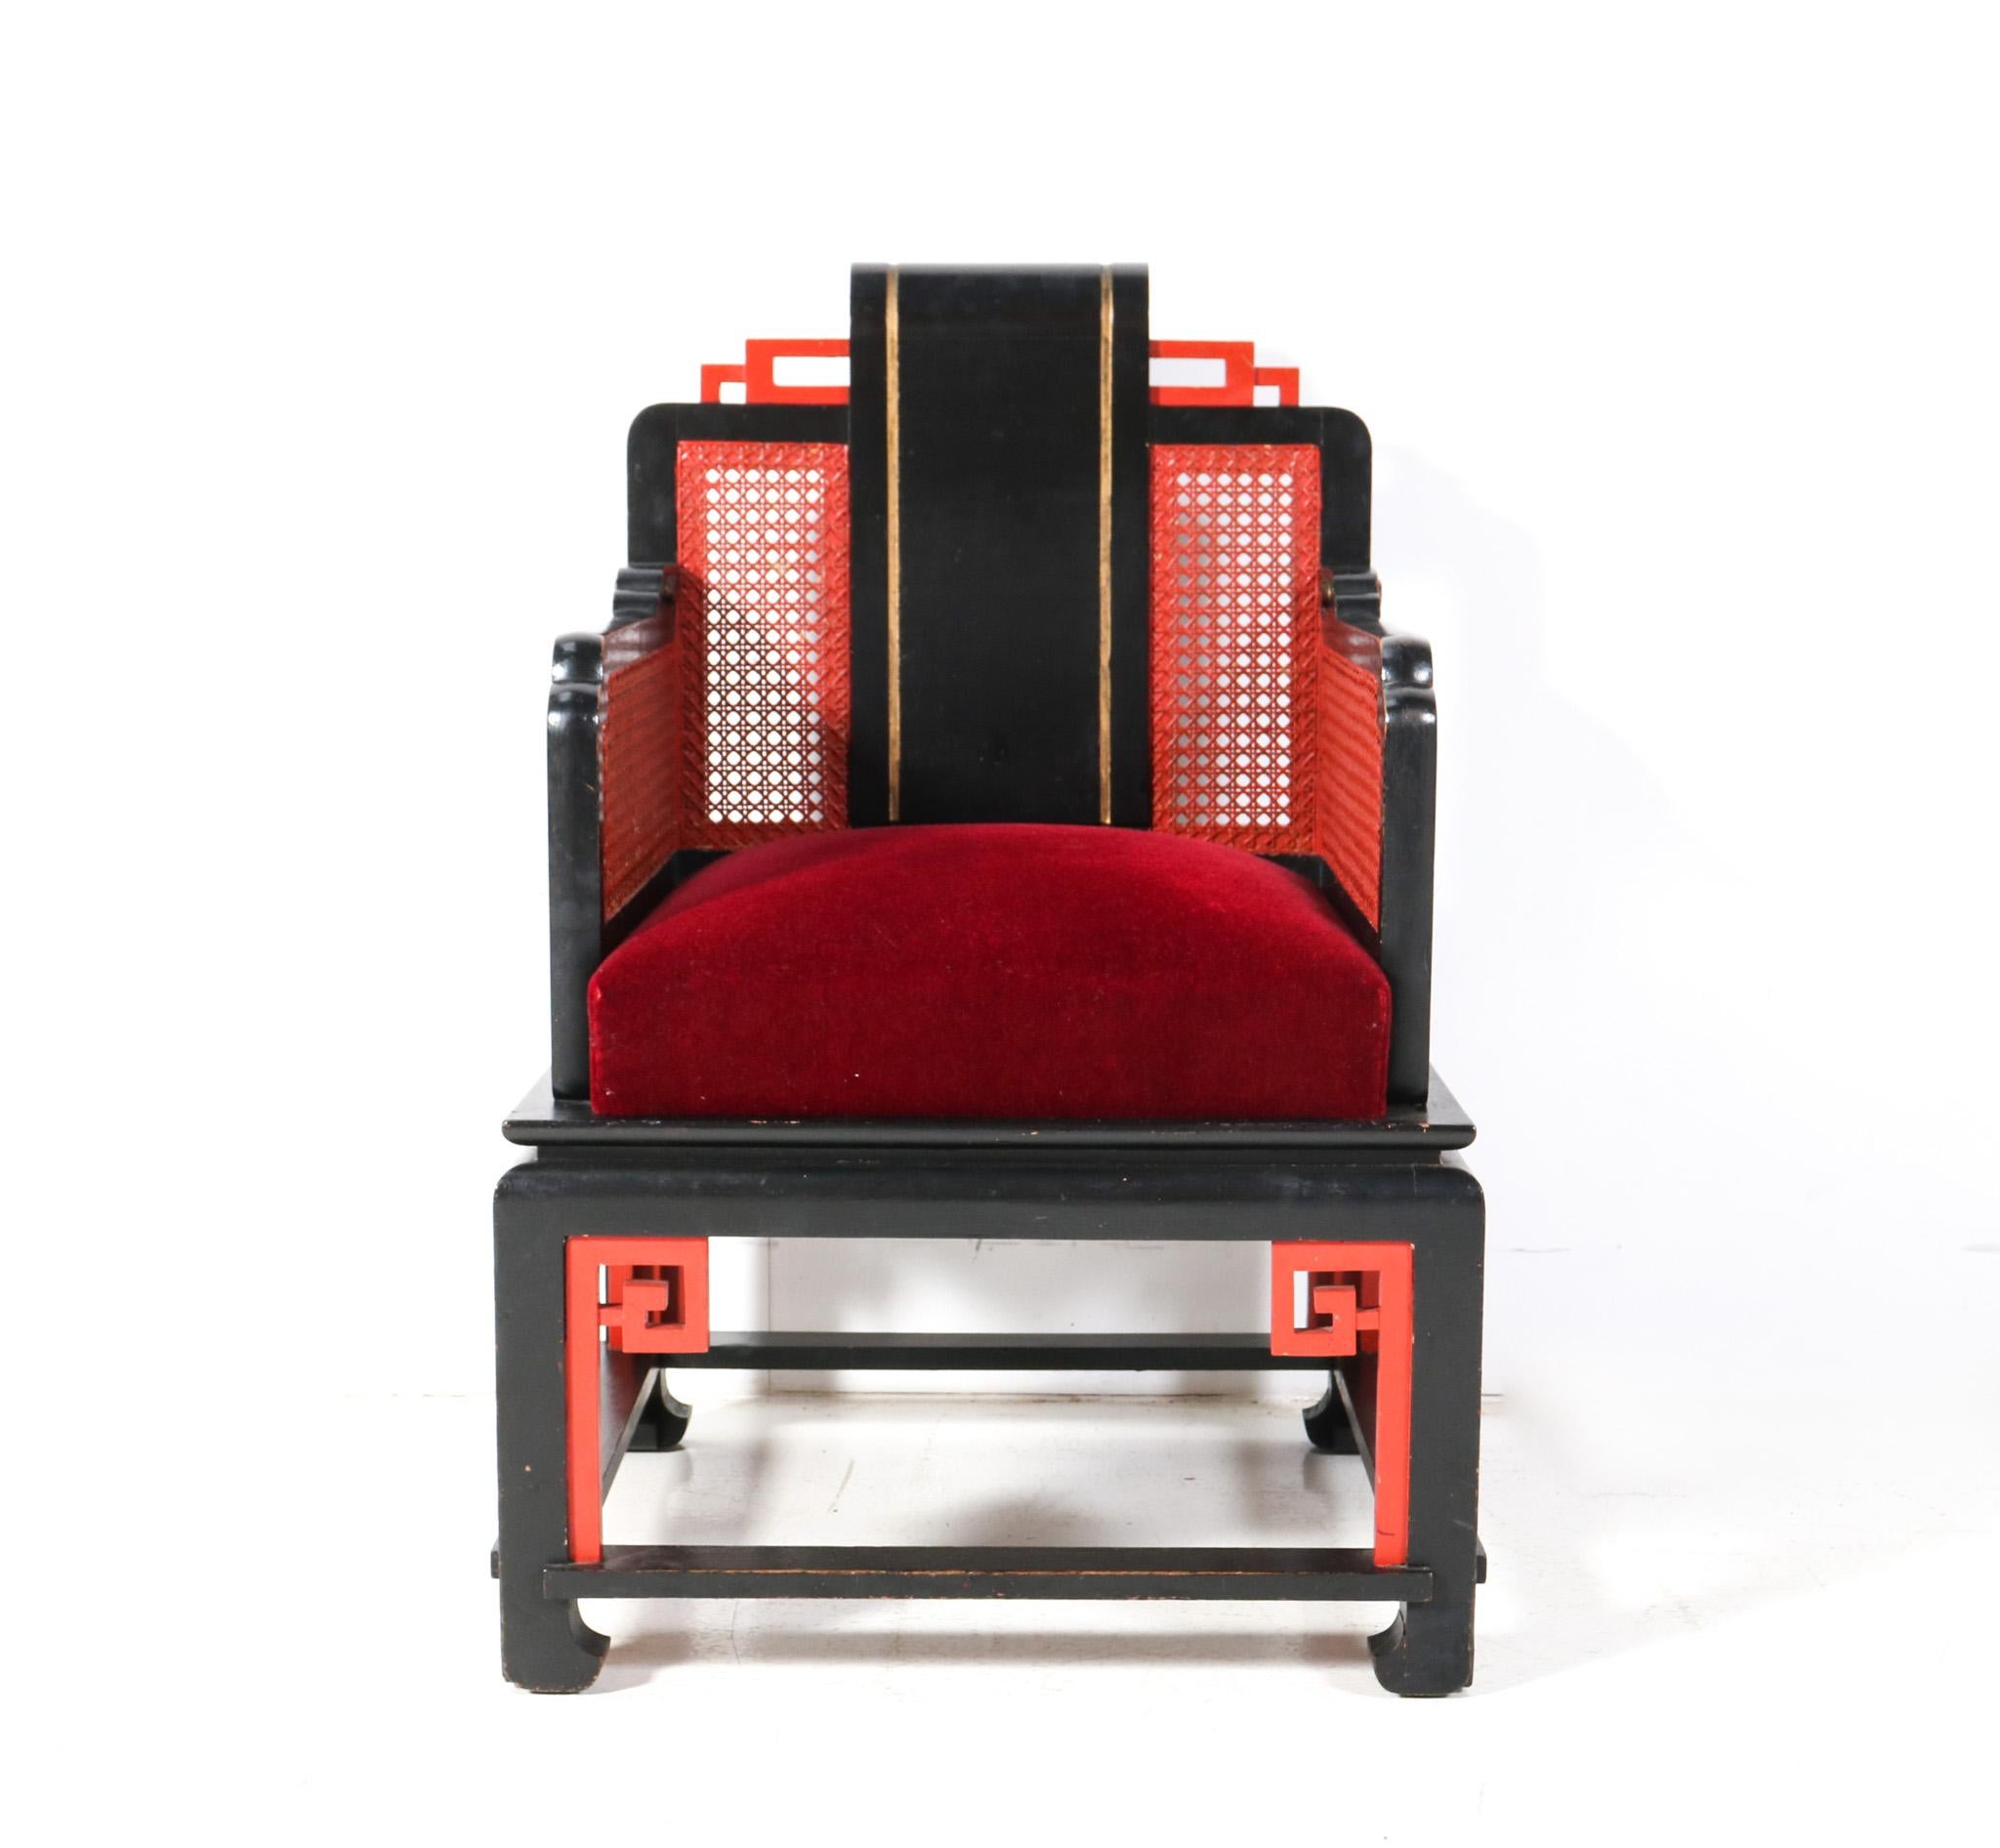 Wunderschöner und seltener Art Deco Japonisme Sessel.
Auffälliges französisches Design aus den 1930er Jahren.
Original lackiertes Buchengestell mit original handbemalter Rattanlehne und Armlehnen.
Der Sitz wurde mit rotem Samt neu gepolstert  durch